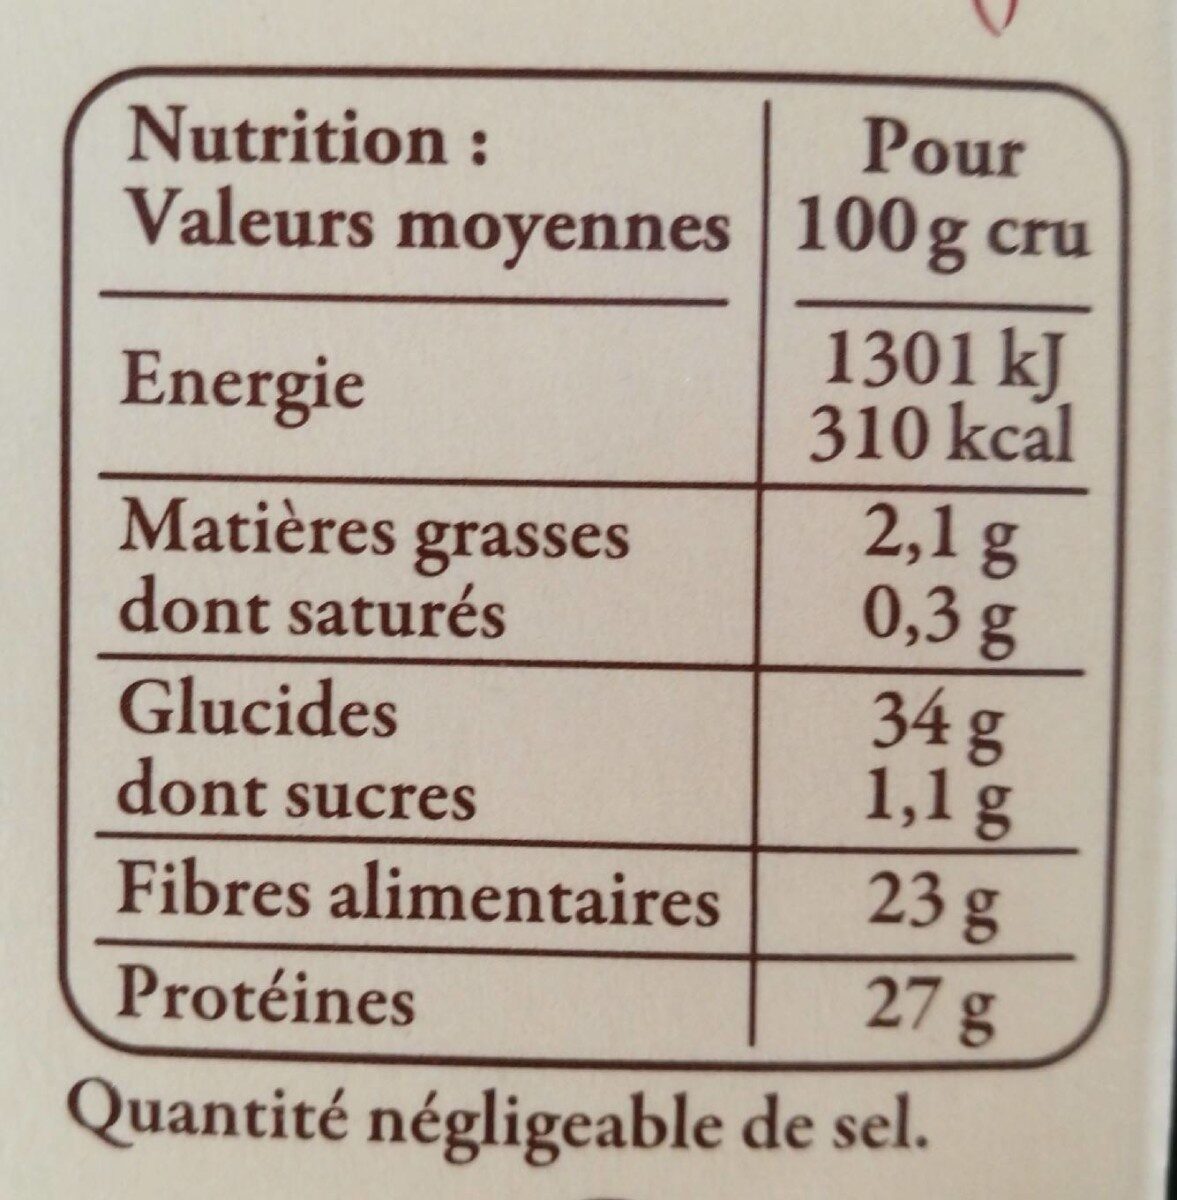 Lentille blonde de saint Flour - Nutrition facts - fr